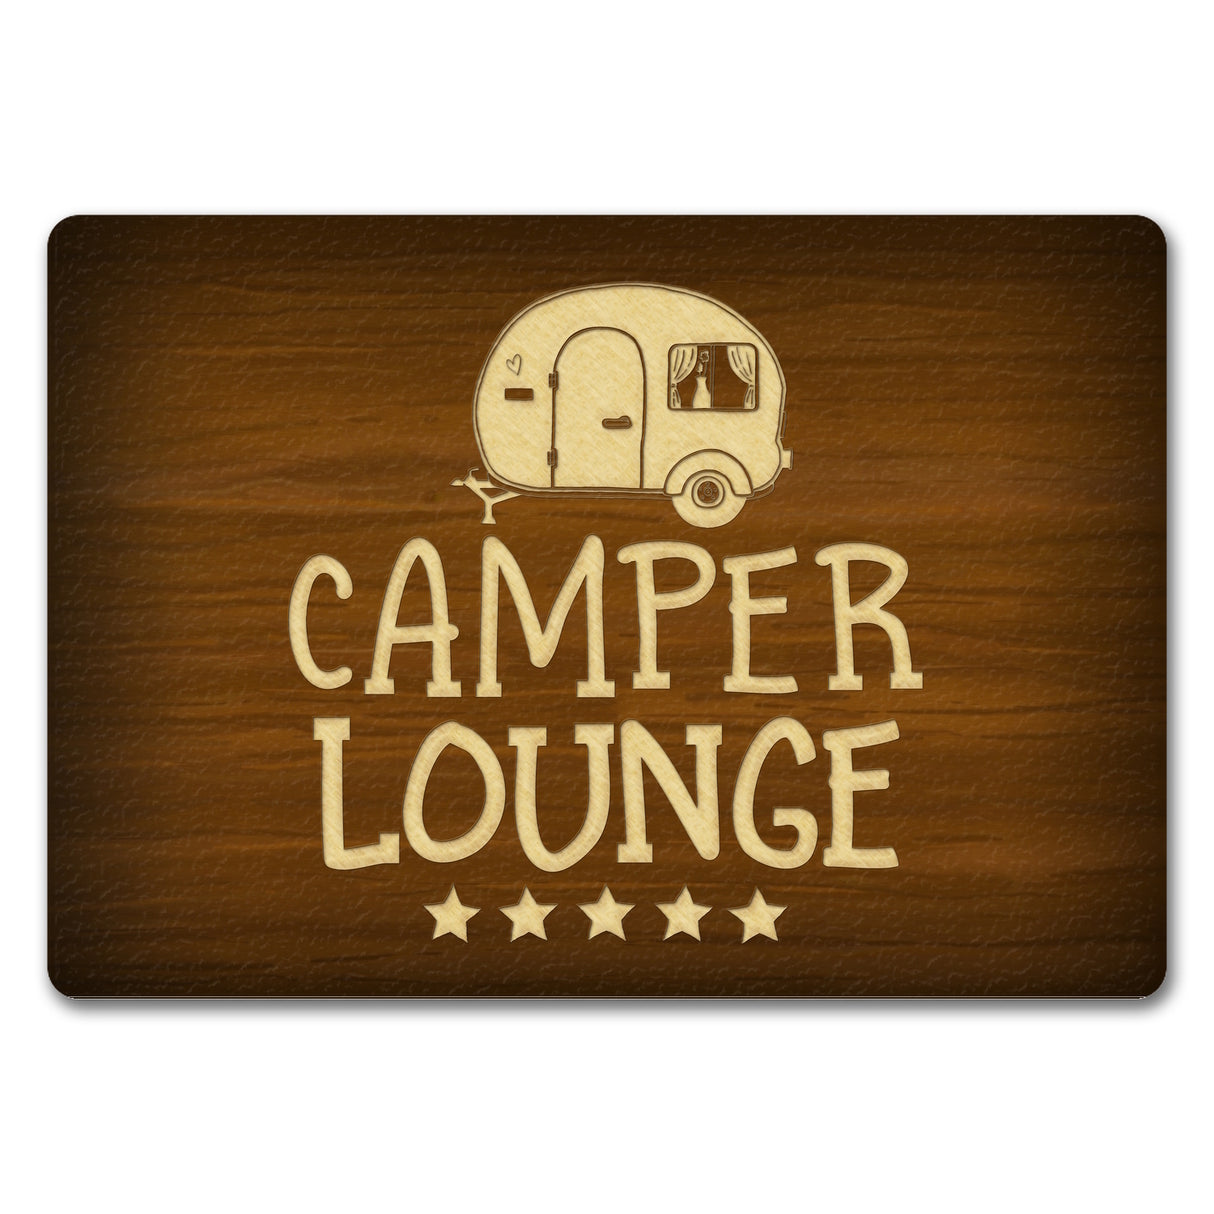 Camper-Lounge Fußmatte mit Wohnwagen Motiv VIP Wohnwagen Wohnmobil Urlaub Gast Gäste